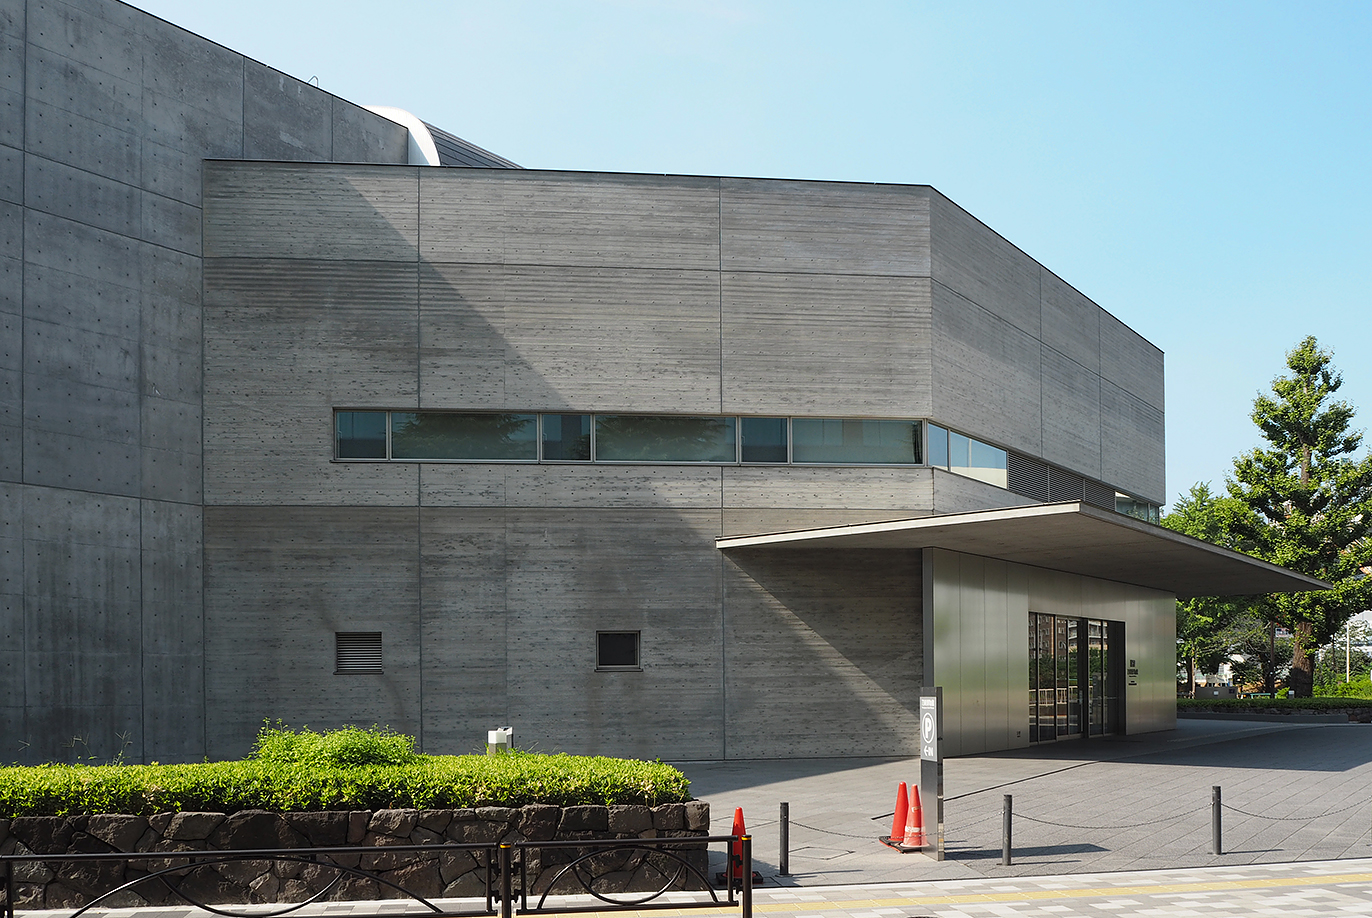 日本刀の魅力に迫る槇文彦設計の「刀剣博物館」